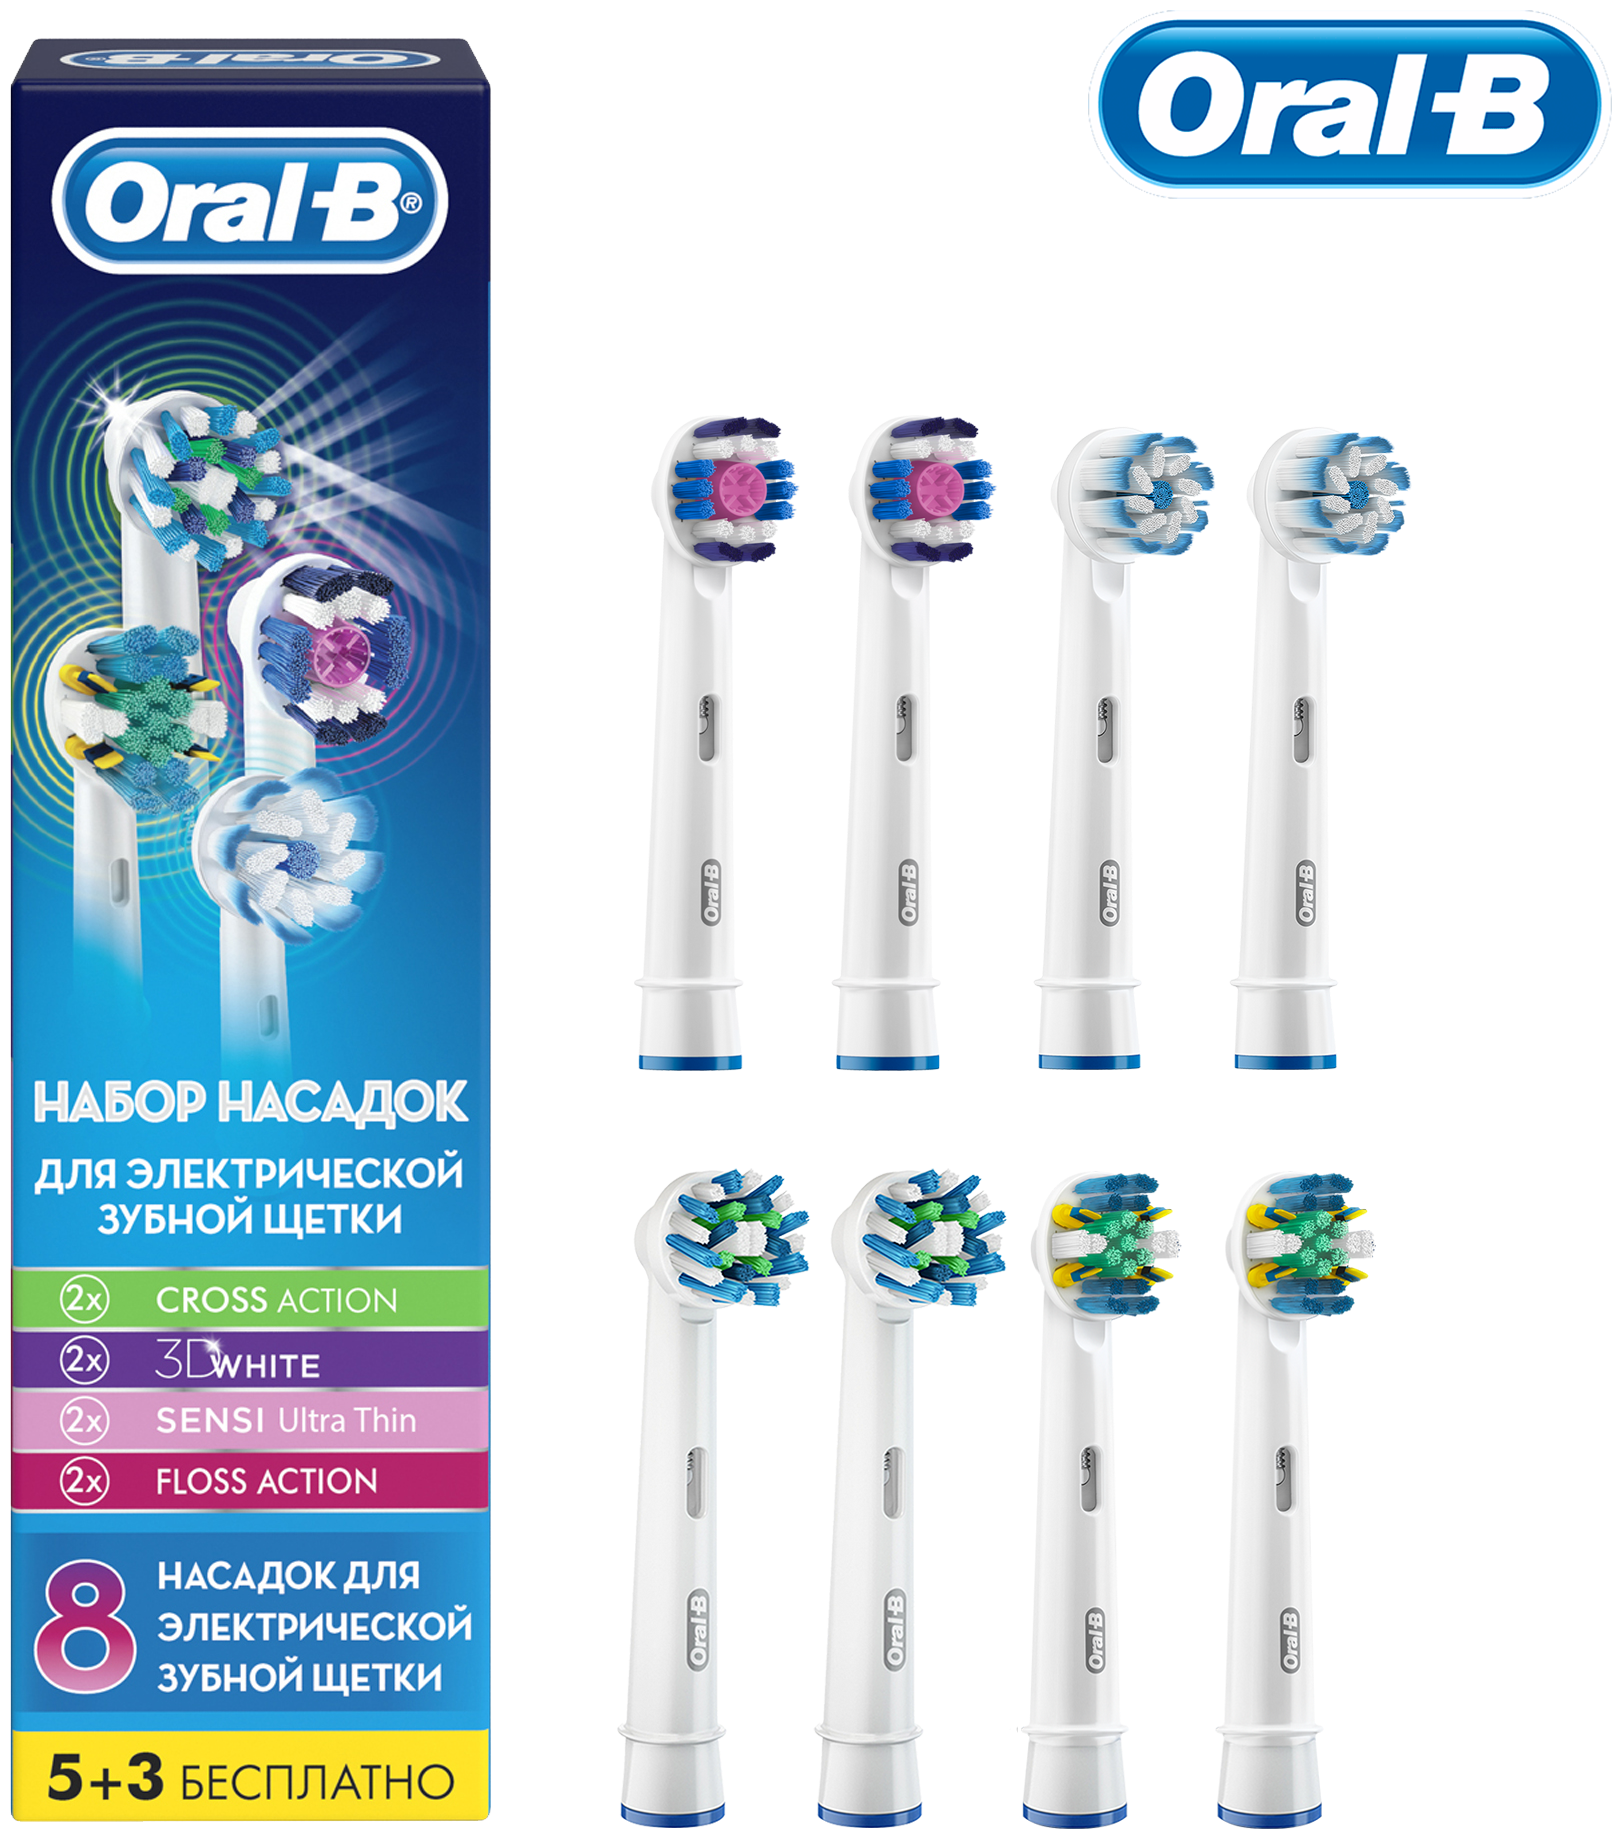 Набор насадок Oral-B Oral-B Cross Action EB 50-2, 3D White EB 18-2, Sensi Ultrathin EB 60-2 и Floss Action EB 25-2 для ирригатора и электрической щетки, белый, 8 шт. - фотография № 2